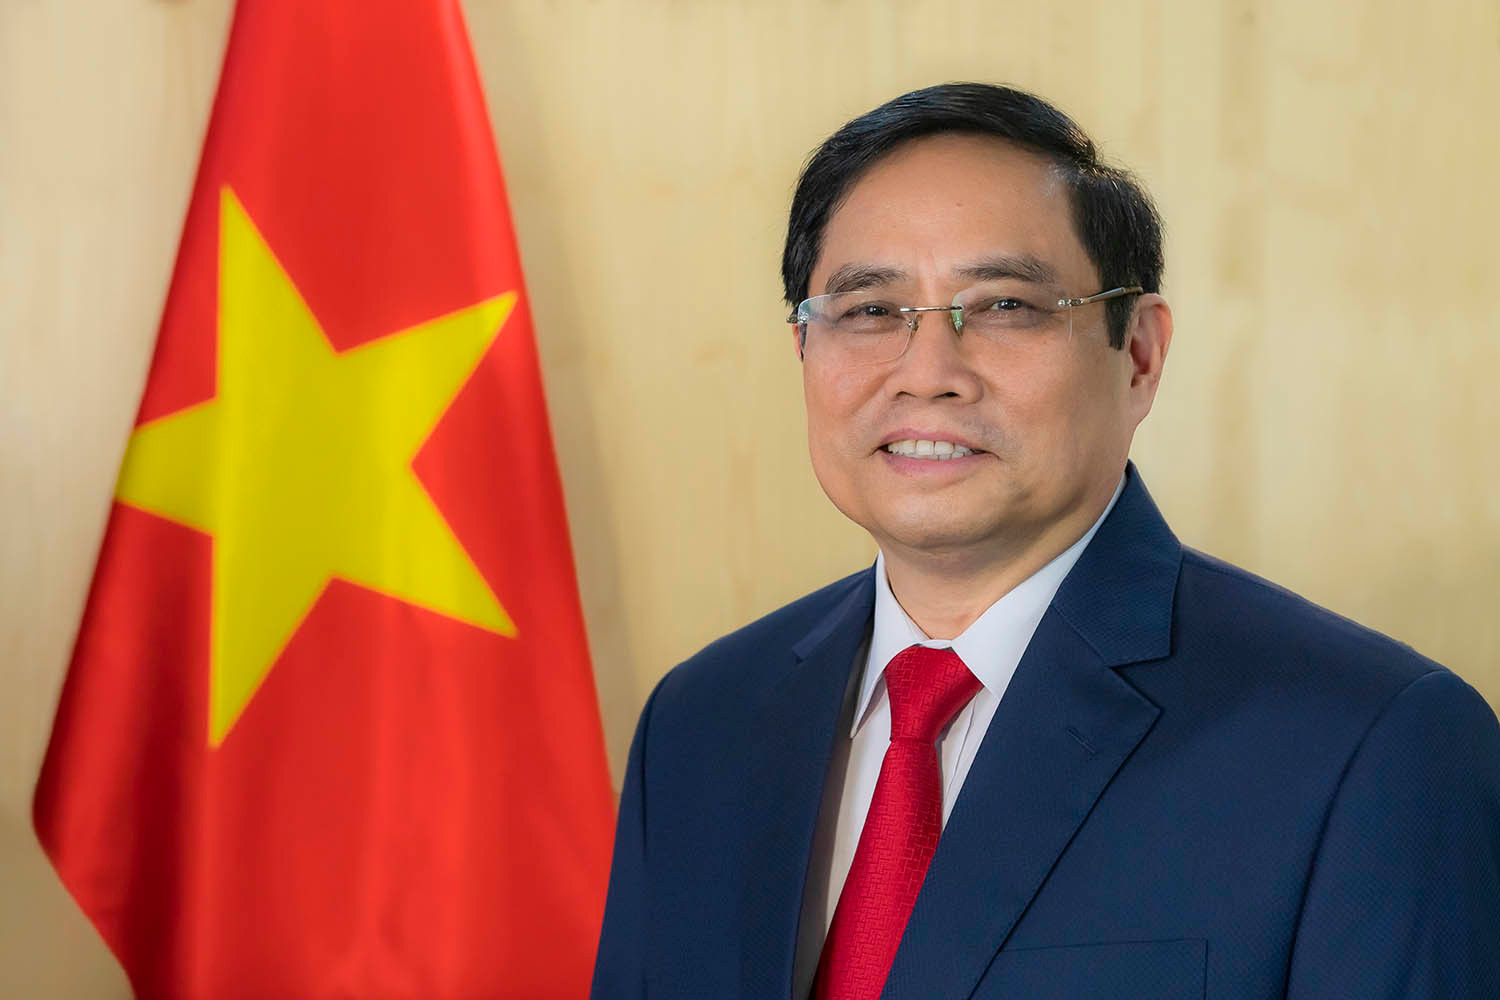 Thủ tướng Chính phủ Phạm Minh Chính dự Hội nghị cấp cao ASEAN lần thứ 42 từ ngày 9-11/5 - Ảnh 1.